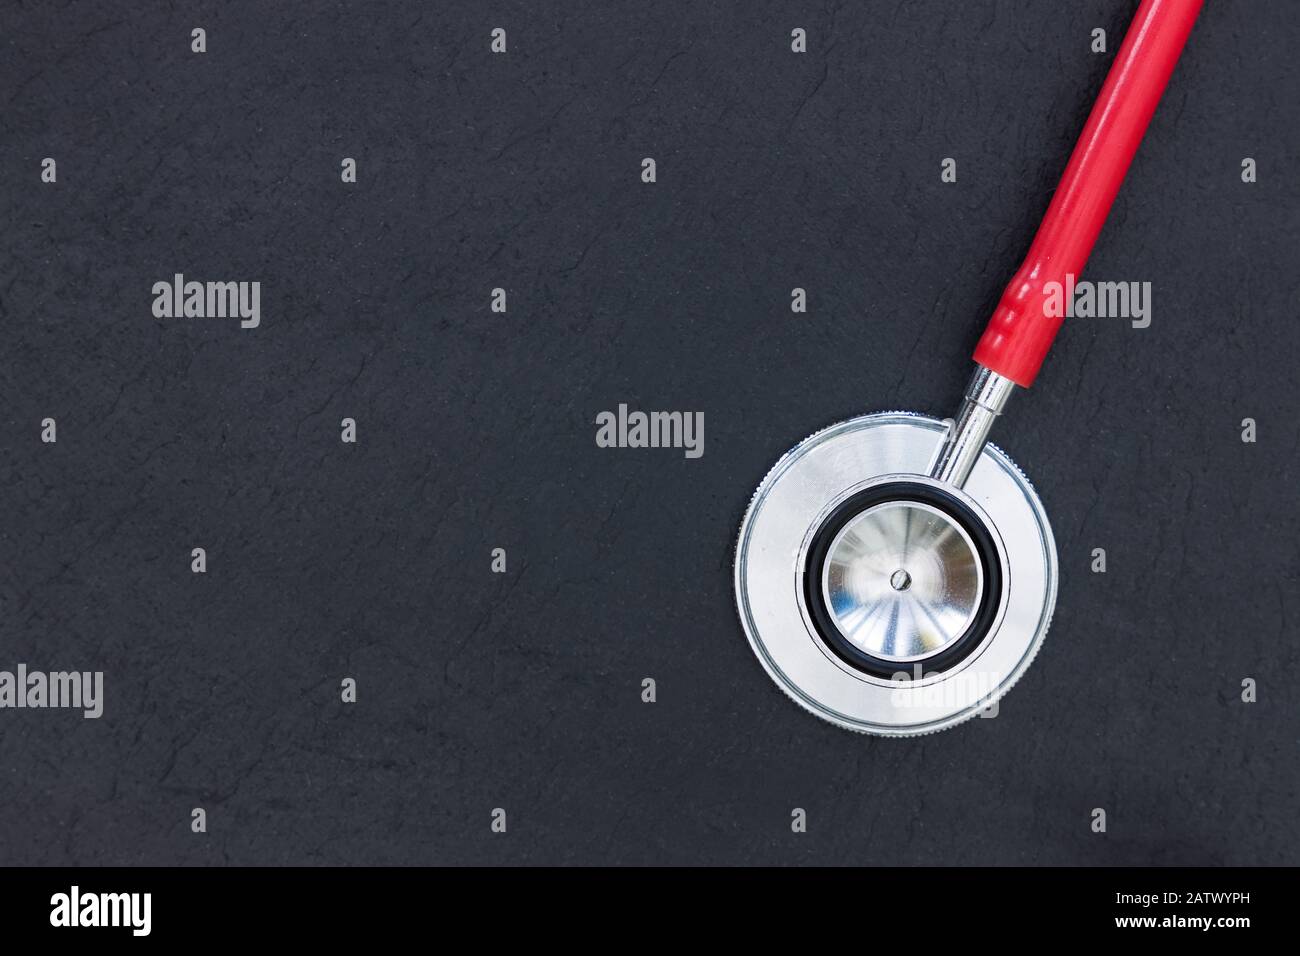 Rotes Stethoskop auf dunklem Hintergrund Draufsicht minimales Konzept für die Gesundheit von Ärzten Stockfoto